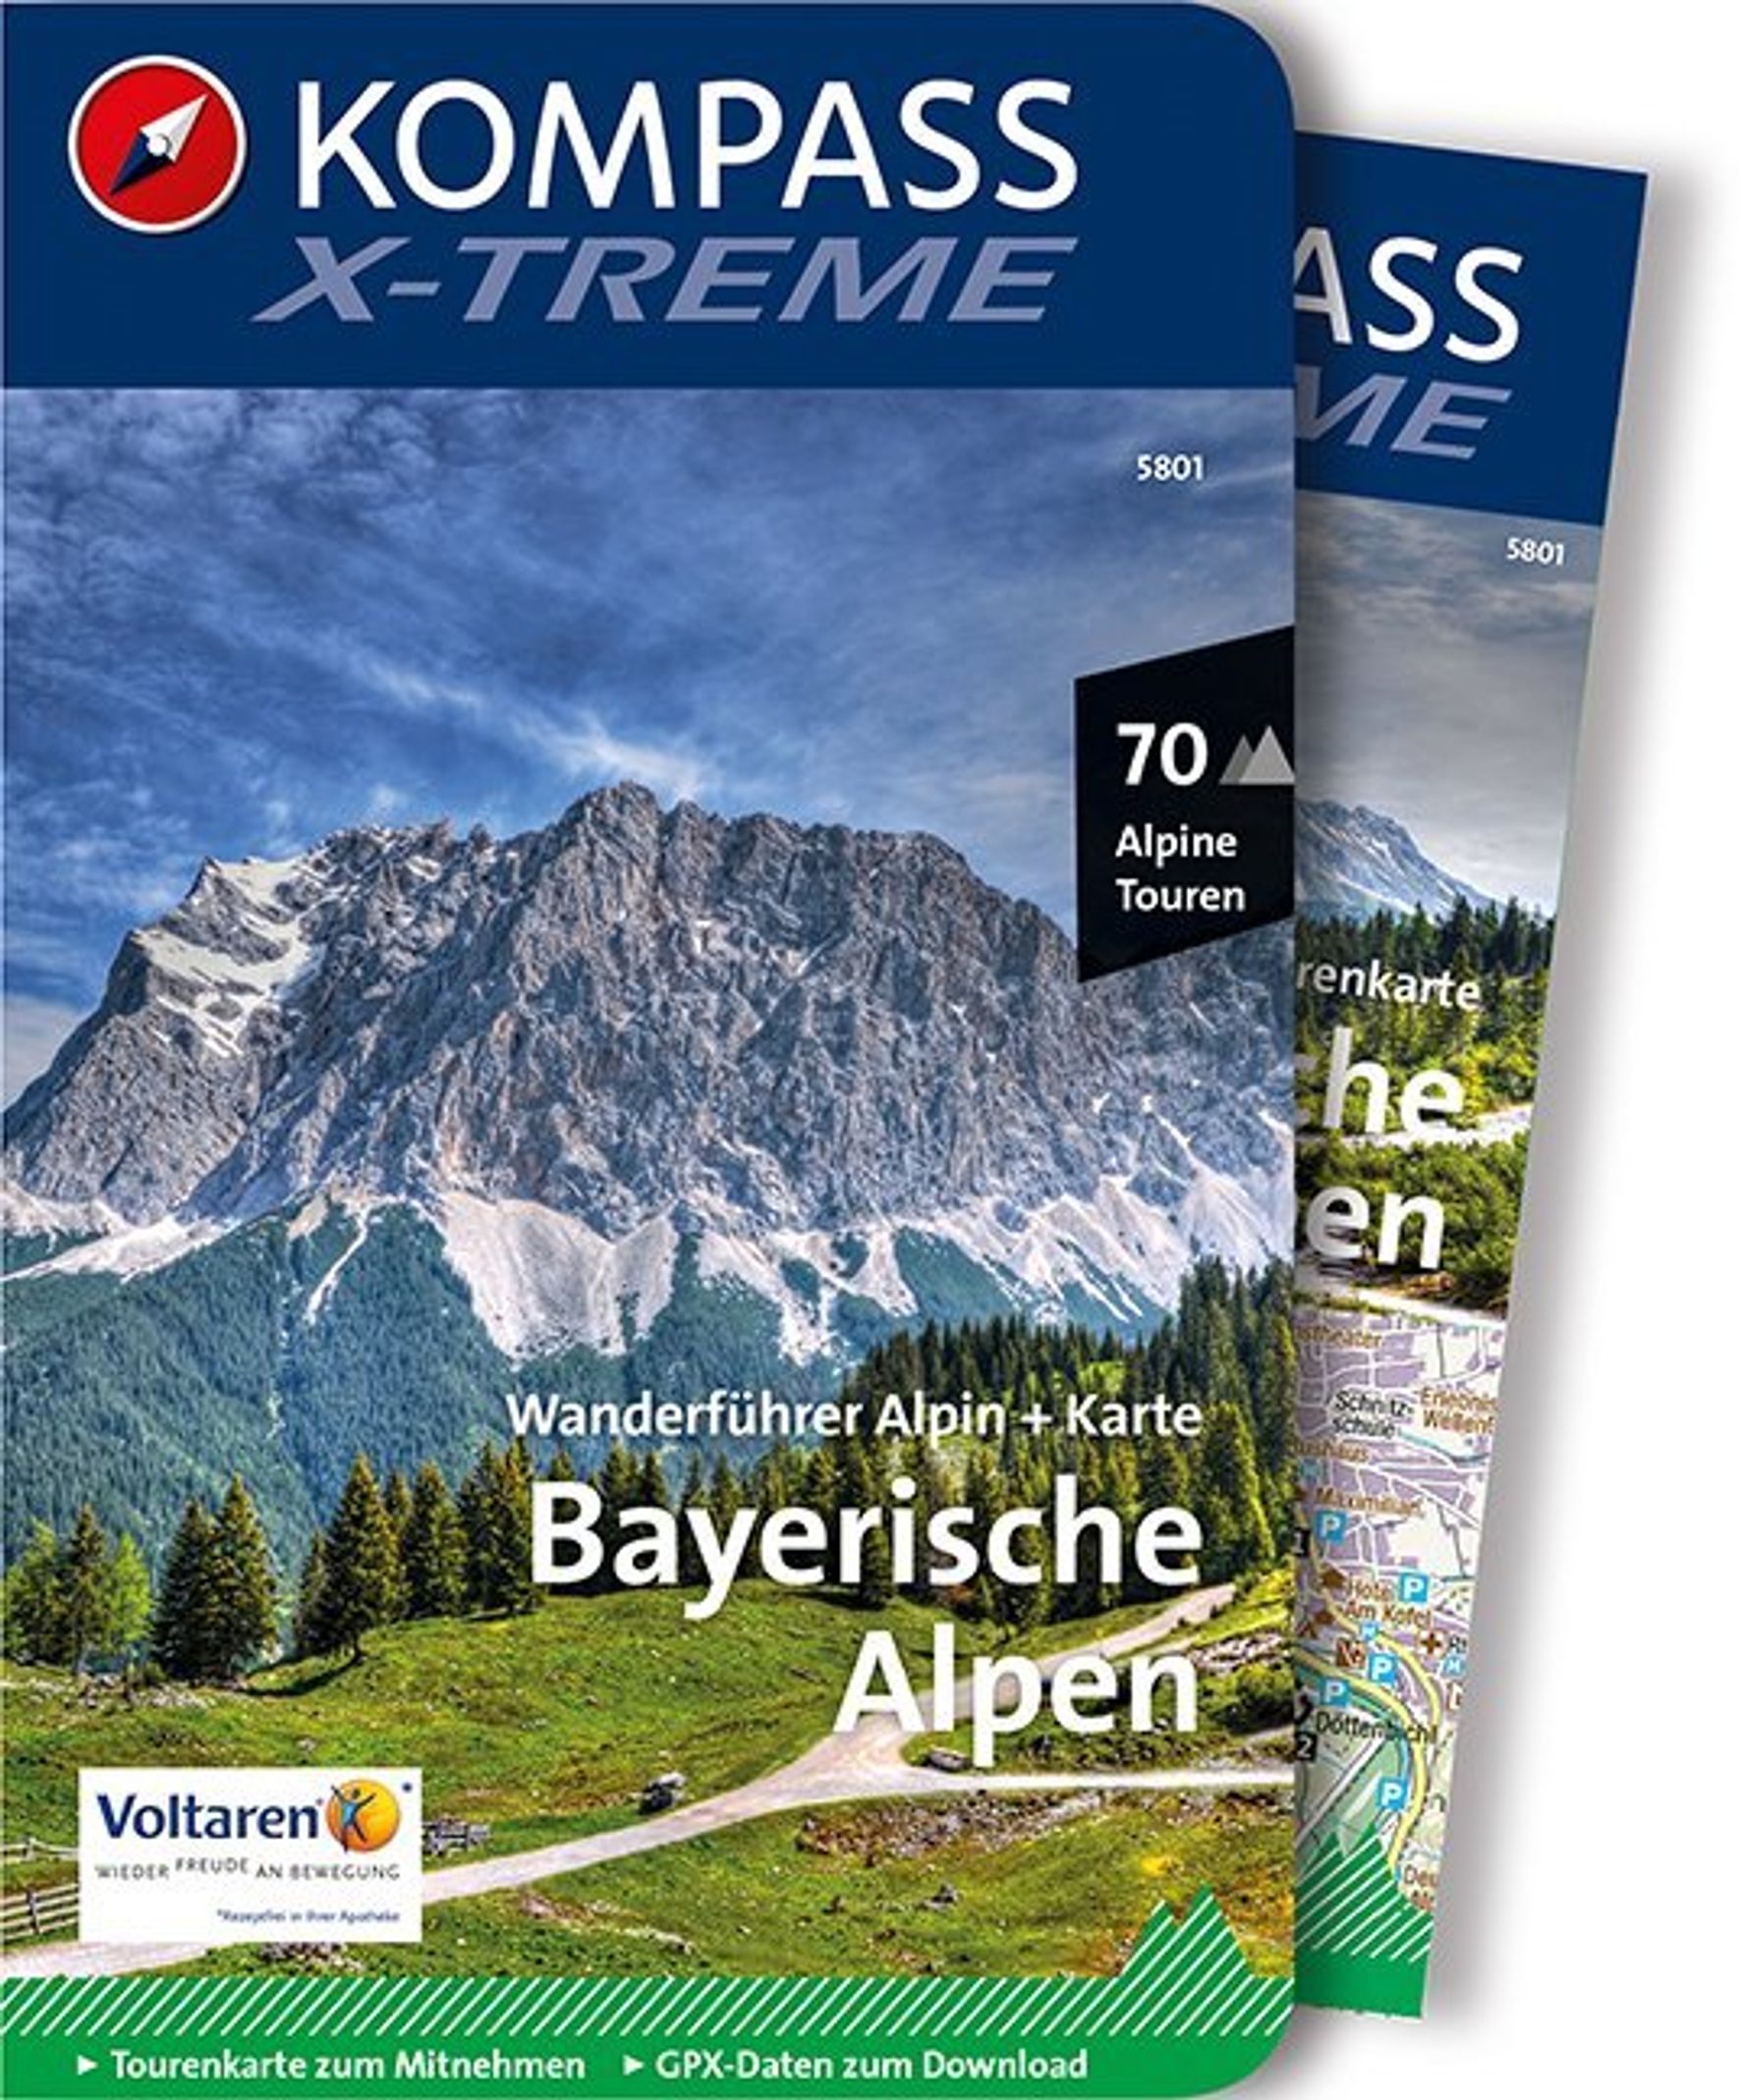 MAIRDUMONT X-treme Bayerische Alpen, 70 Alpine Touren mit Extra-Tourenkarte